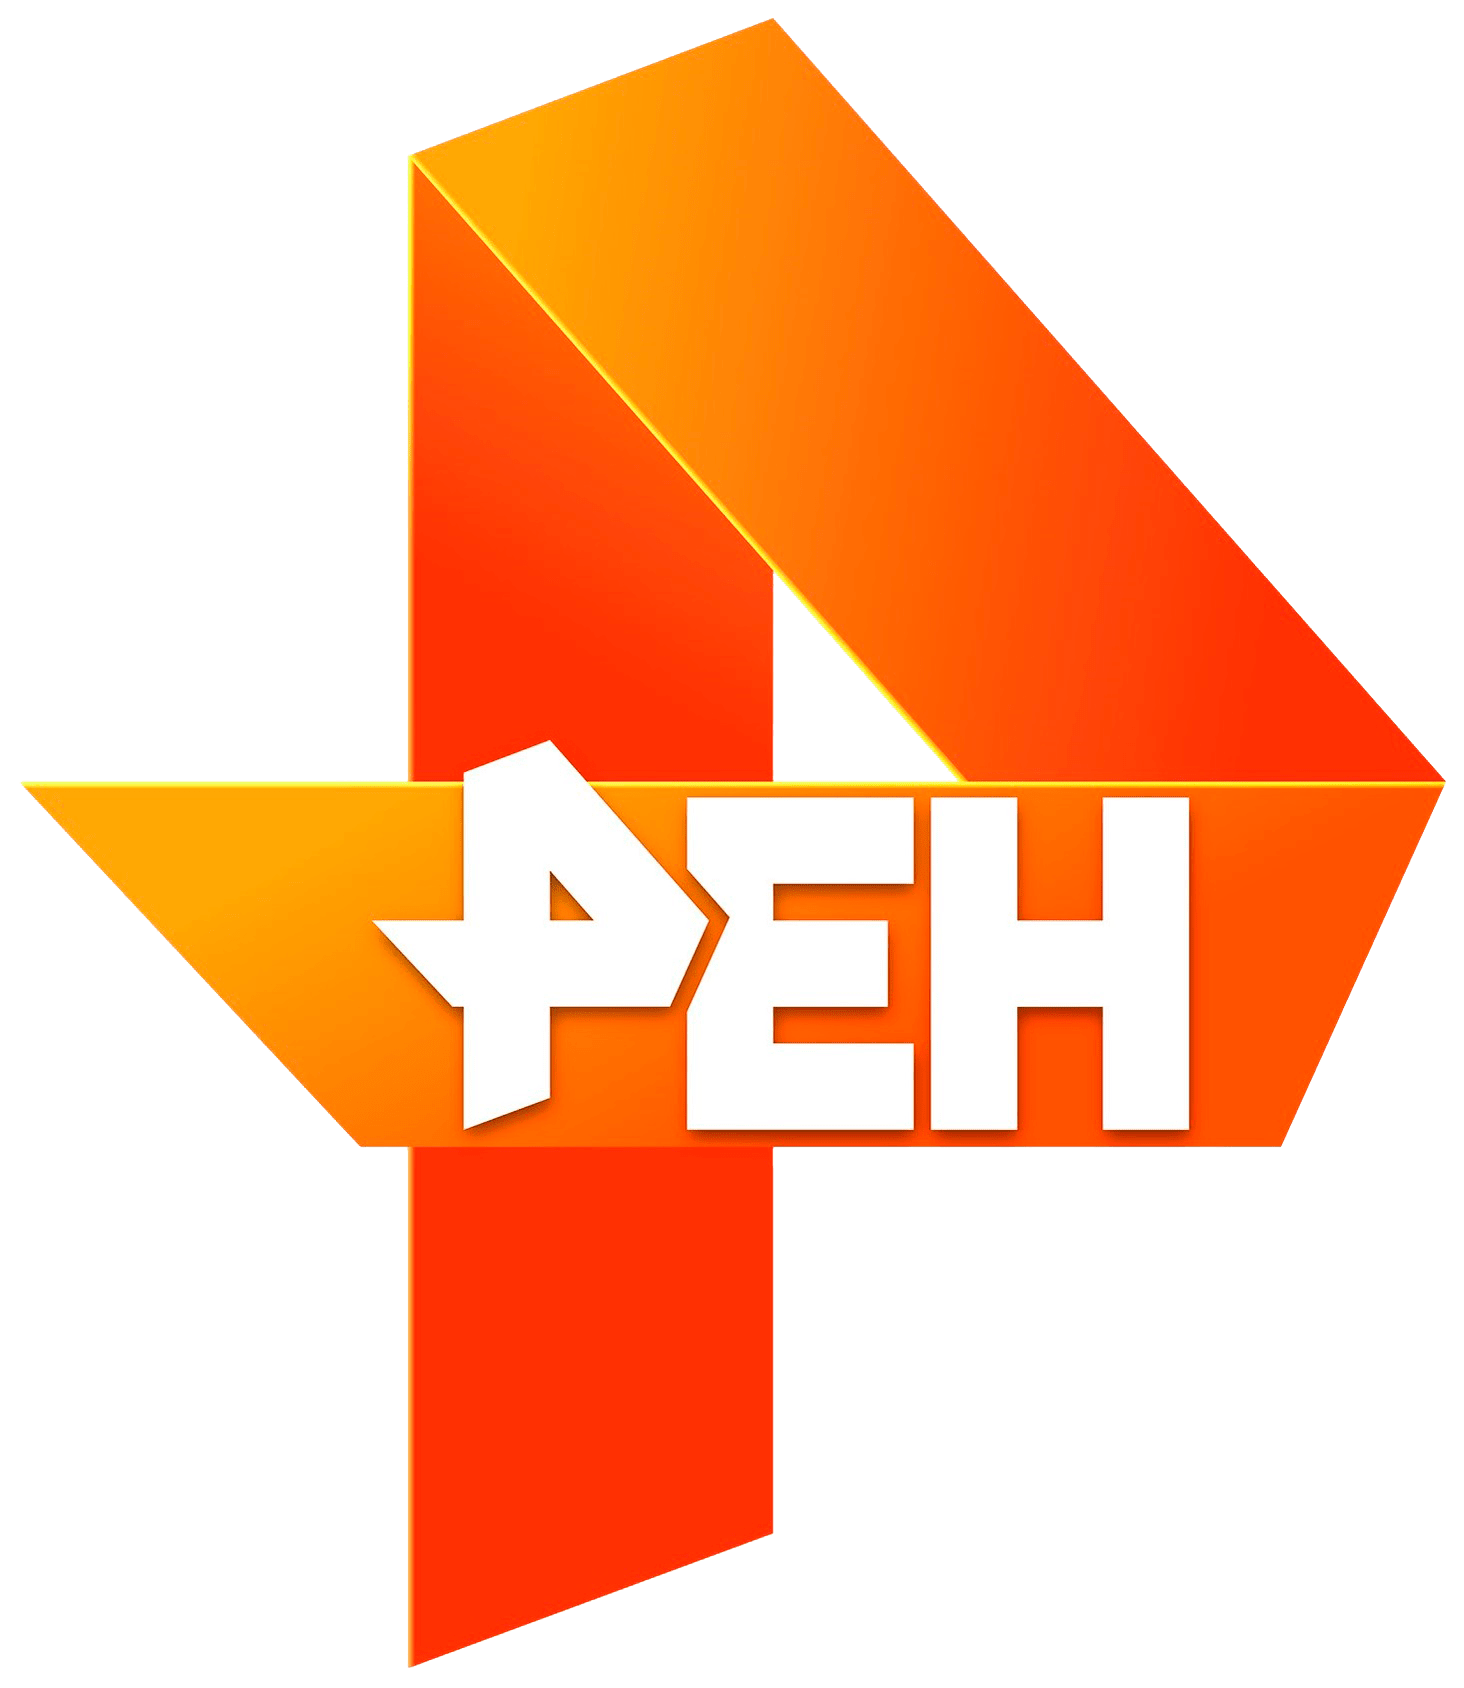 Раземщение рекламы РЕН ТВ, г. Новосибирск